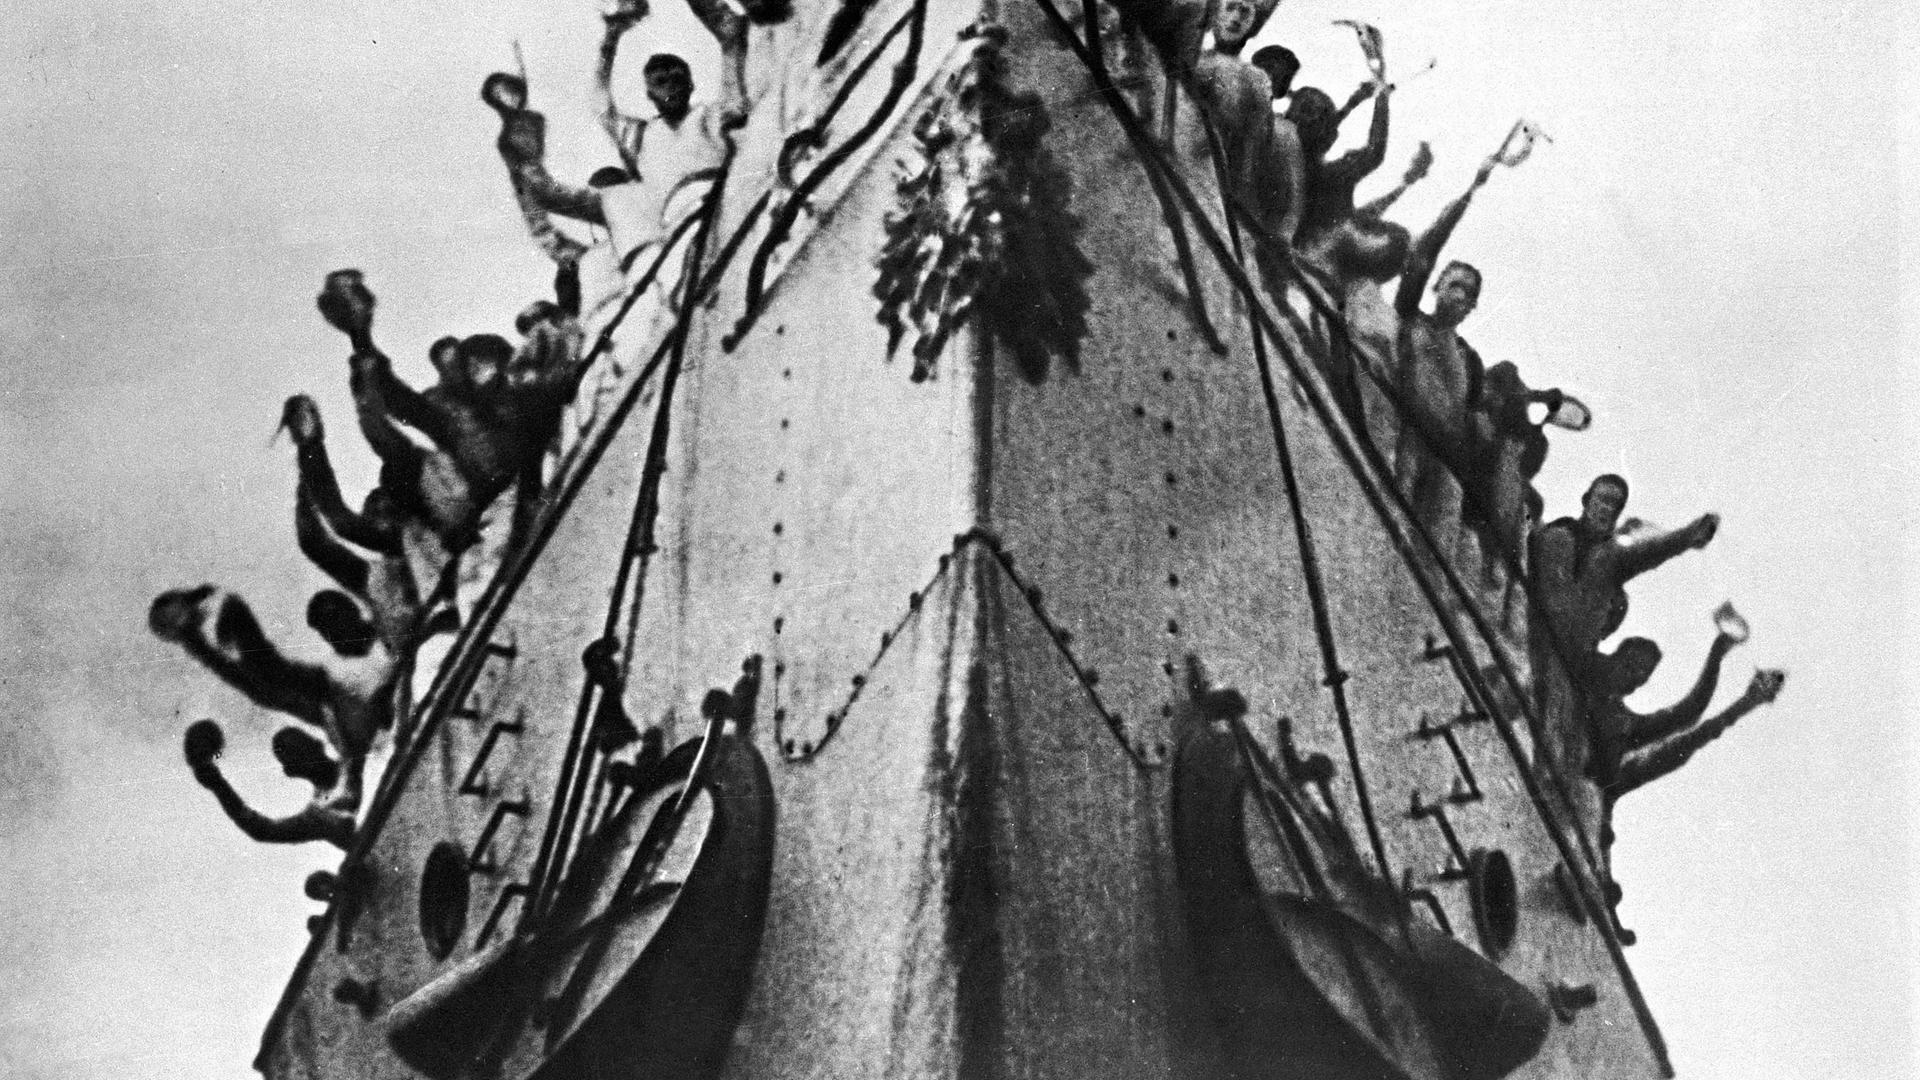 Ein Film-Bild aus "Panzerkreuzer Potemkin" von Sergei Eisenstein. Zu sehen ist ein großes Schiff mit Menschen an Deck.